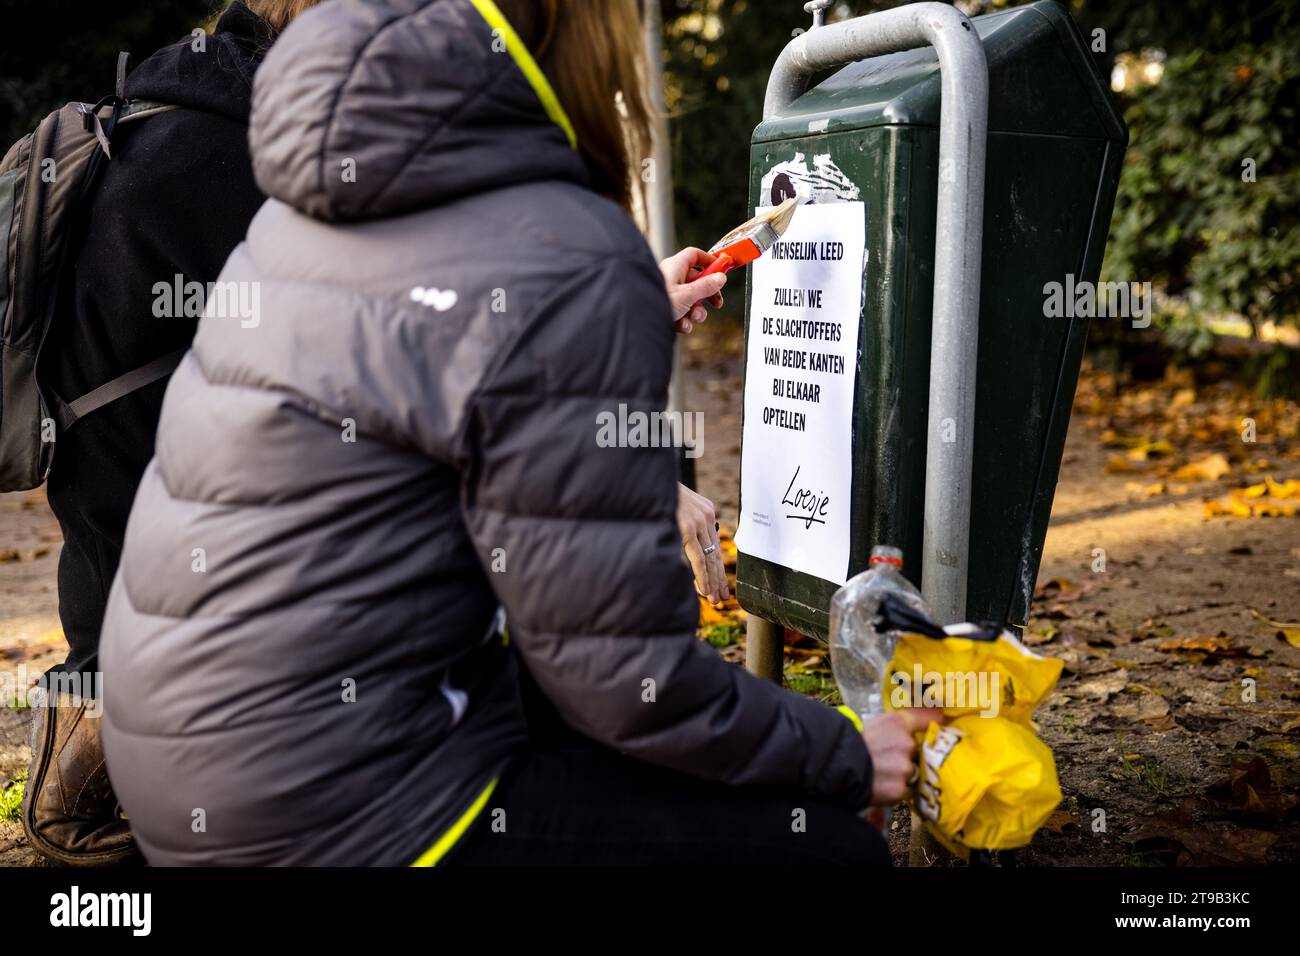 TILBURG - Un supporter de Loesje place des affiches lors d'un marathon d'autocollants pour le quarantième anniversaire de Loesje. ANP ROB ENGELAAR pays-bas Out - belgique Out Banque D'Images